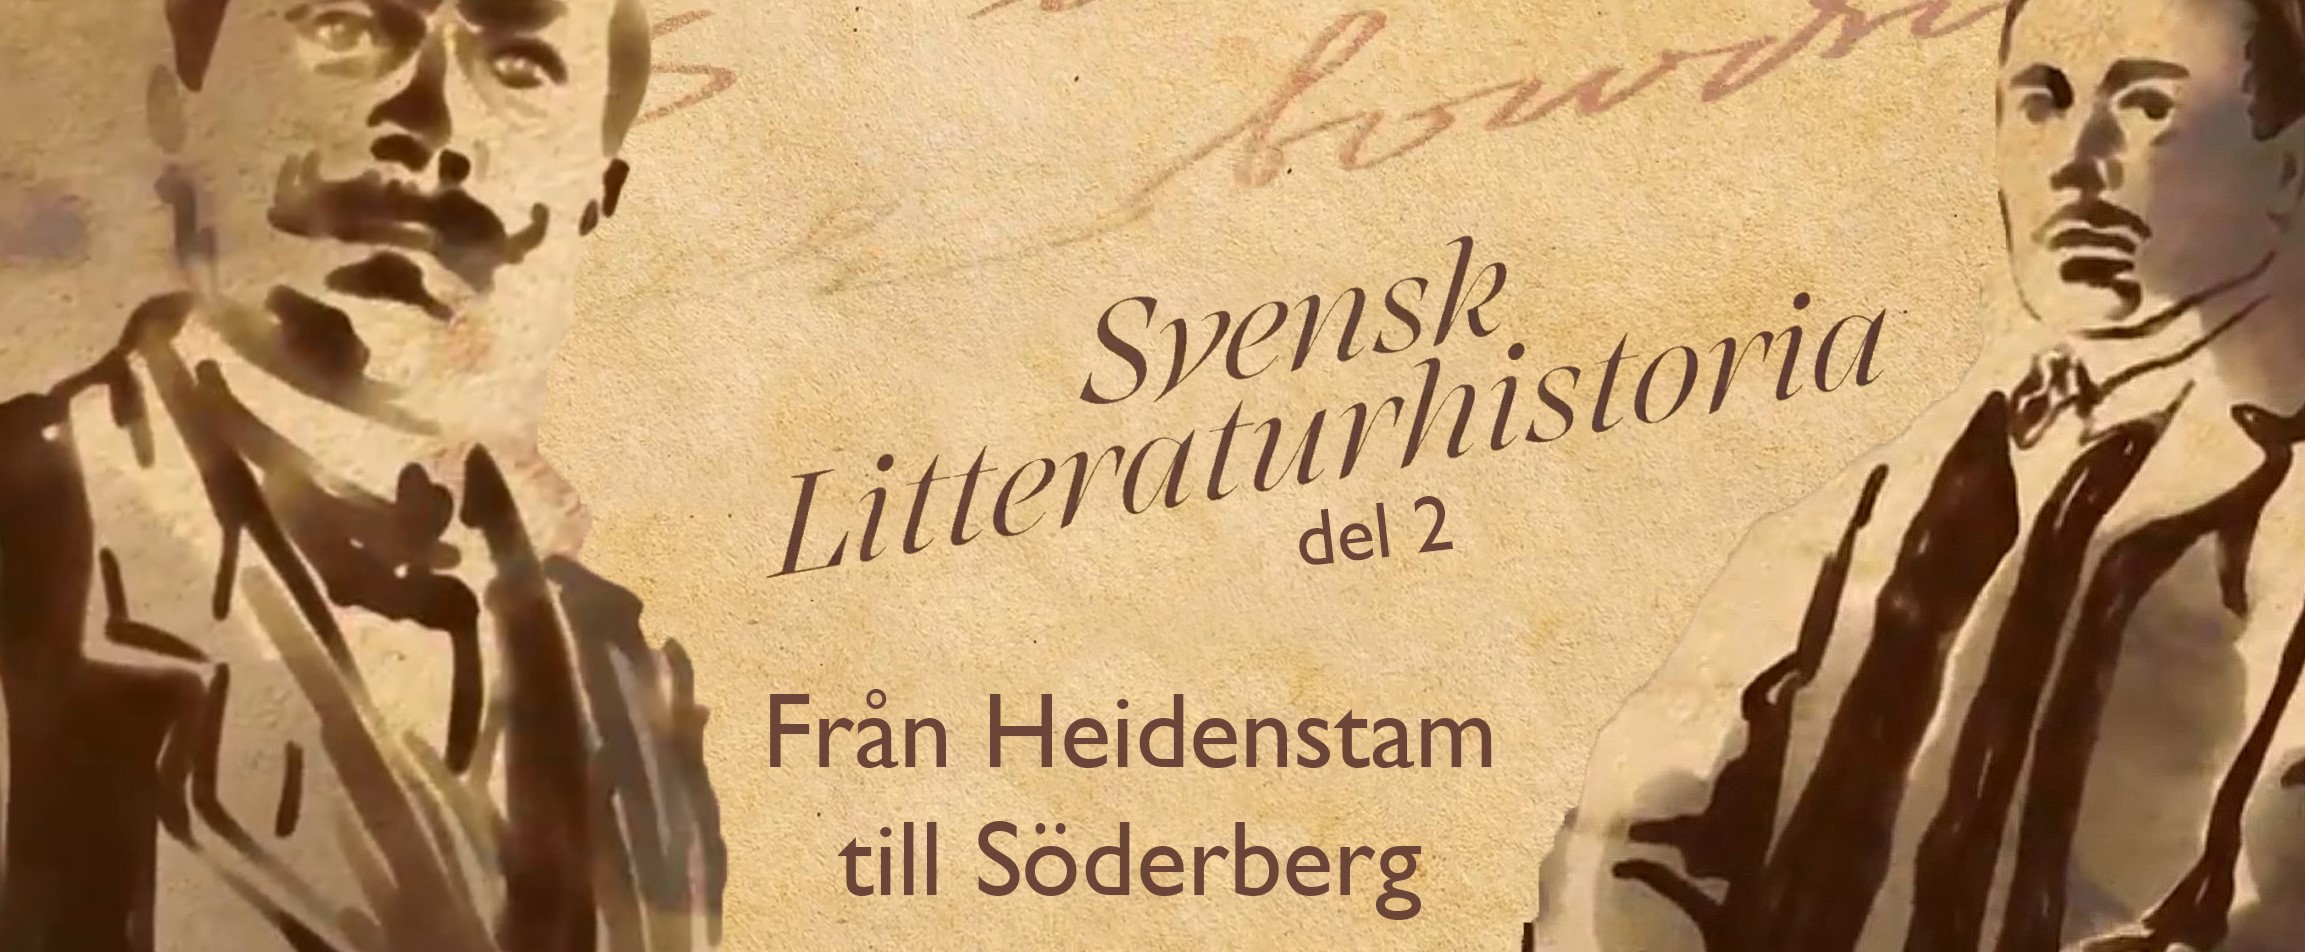 Svensk Litteraturhistoria del 2 Från Heidenstam till Söderberg